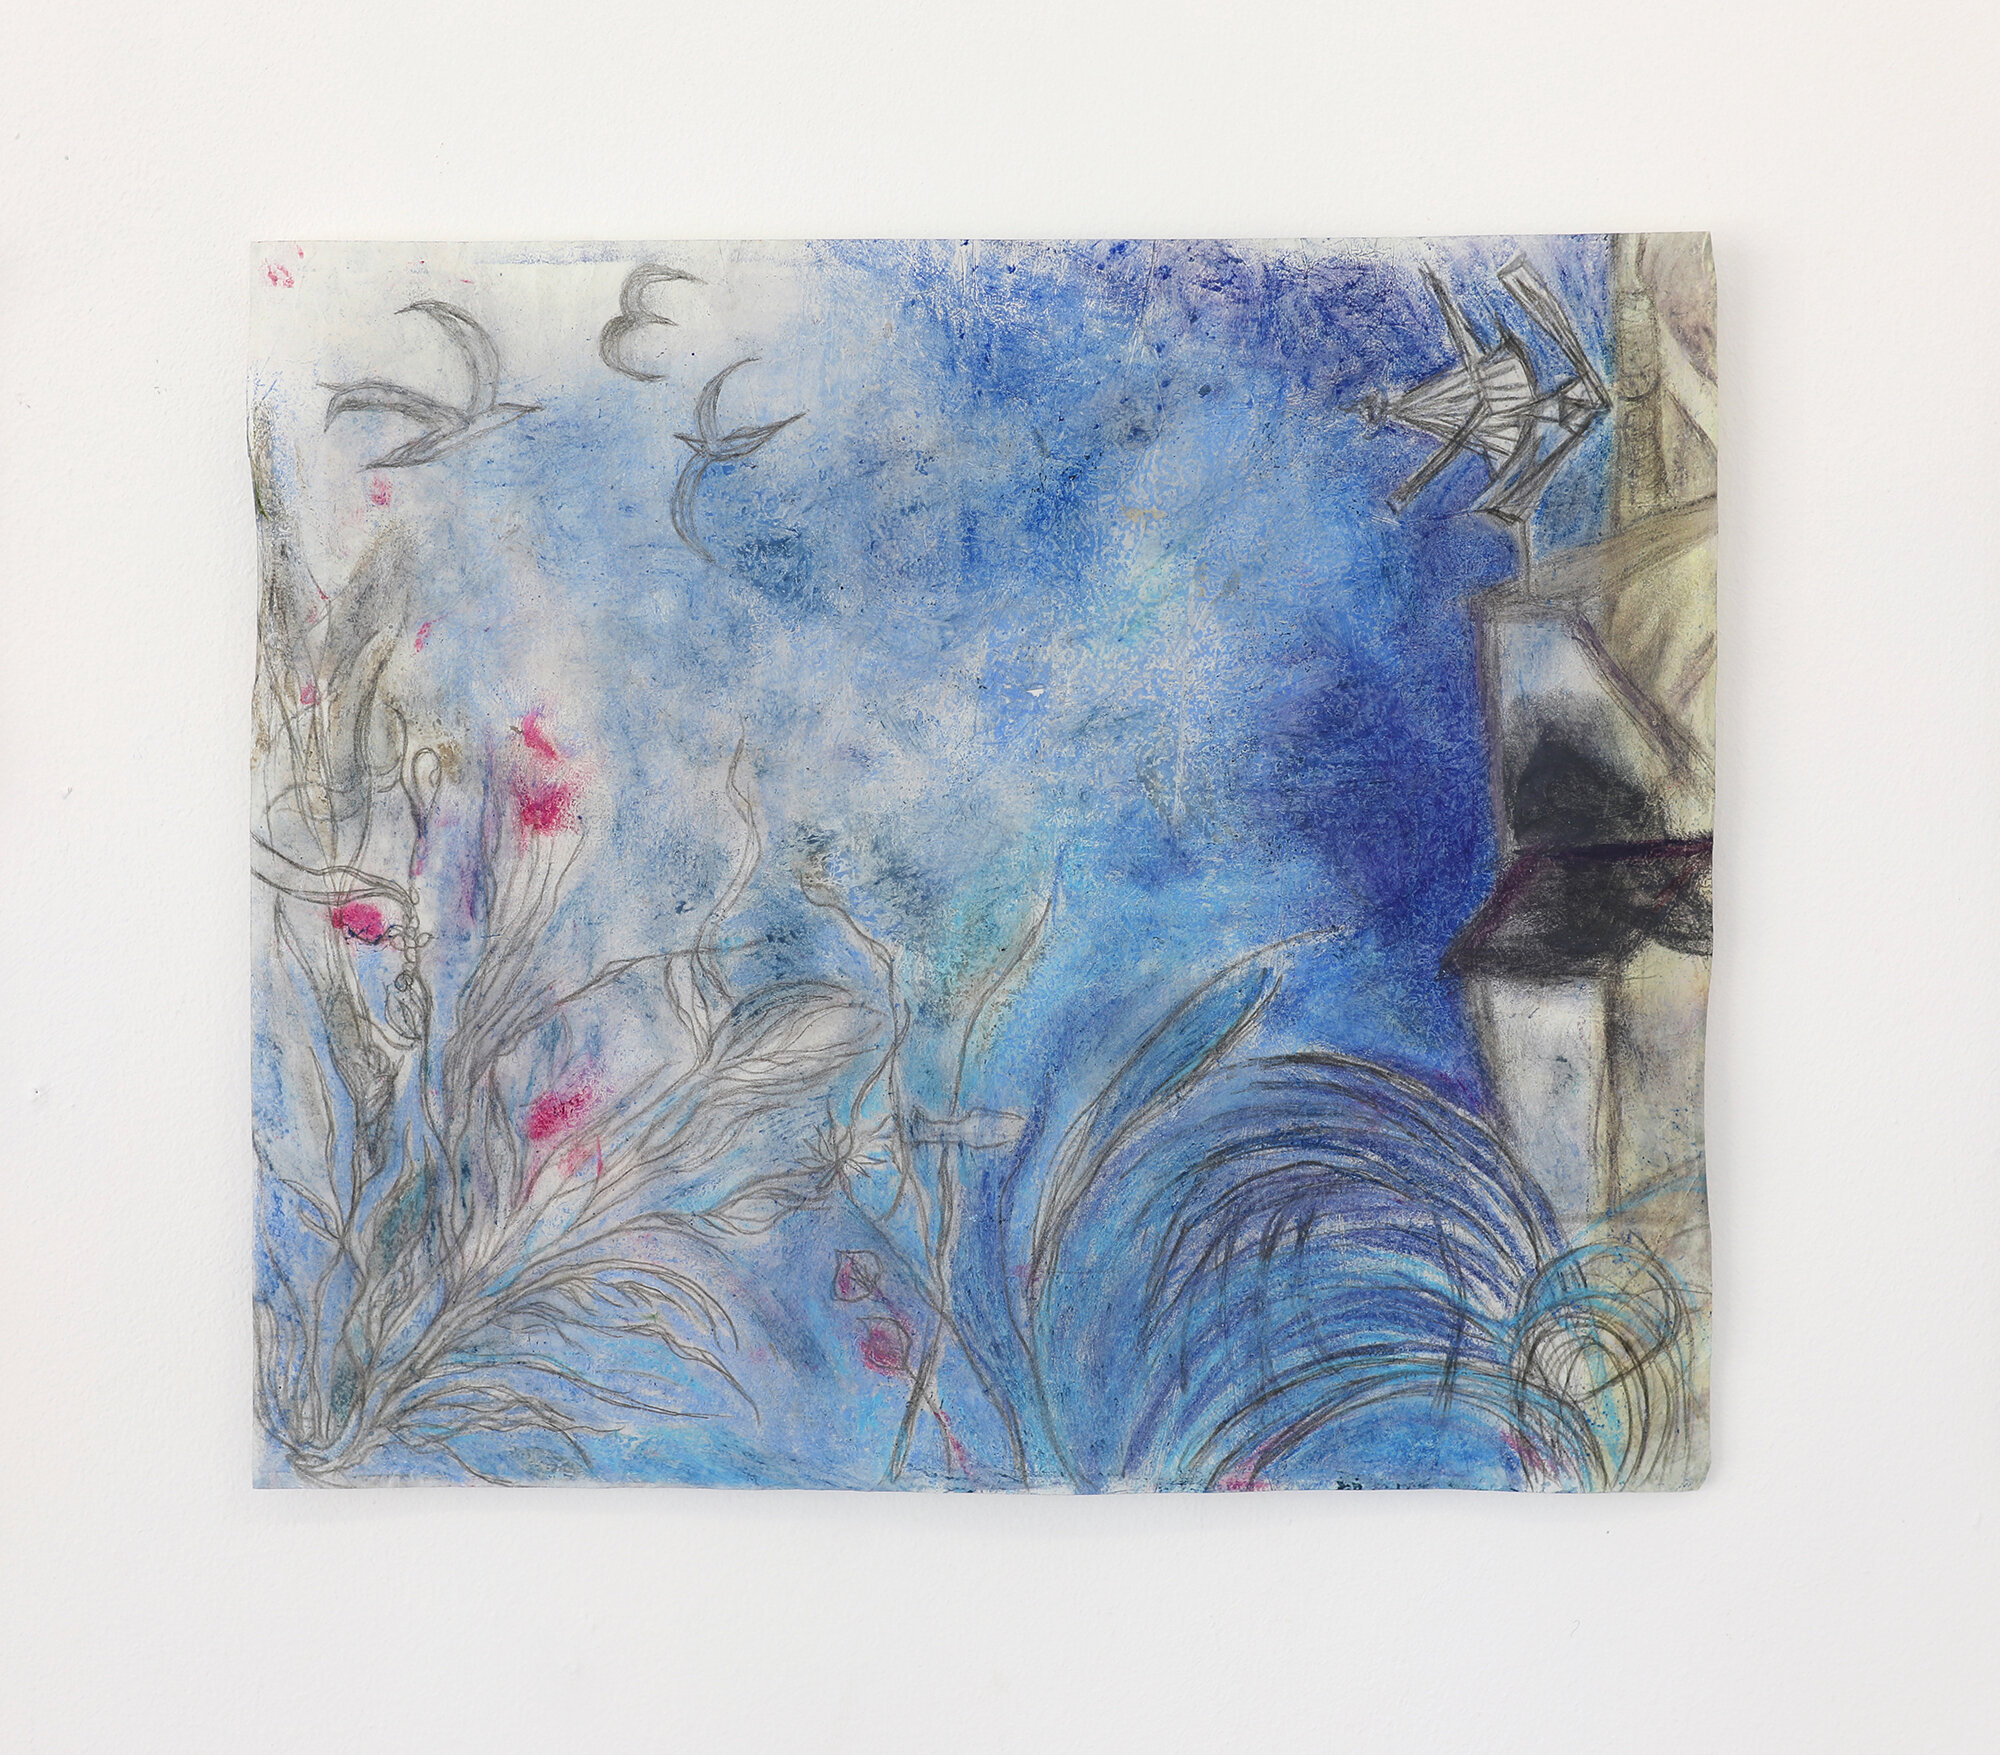   “De près”, (« Up close ») , 2020, oil pastel and pencil on found paper, 39x34,5cm 